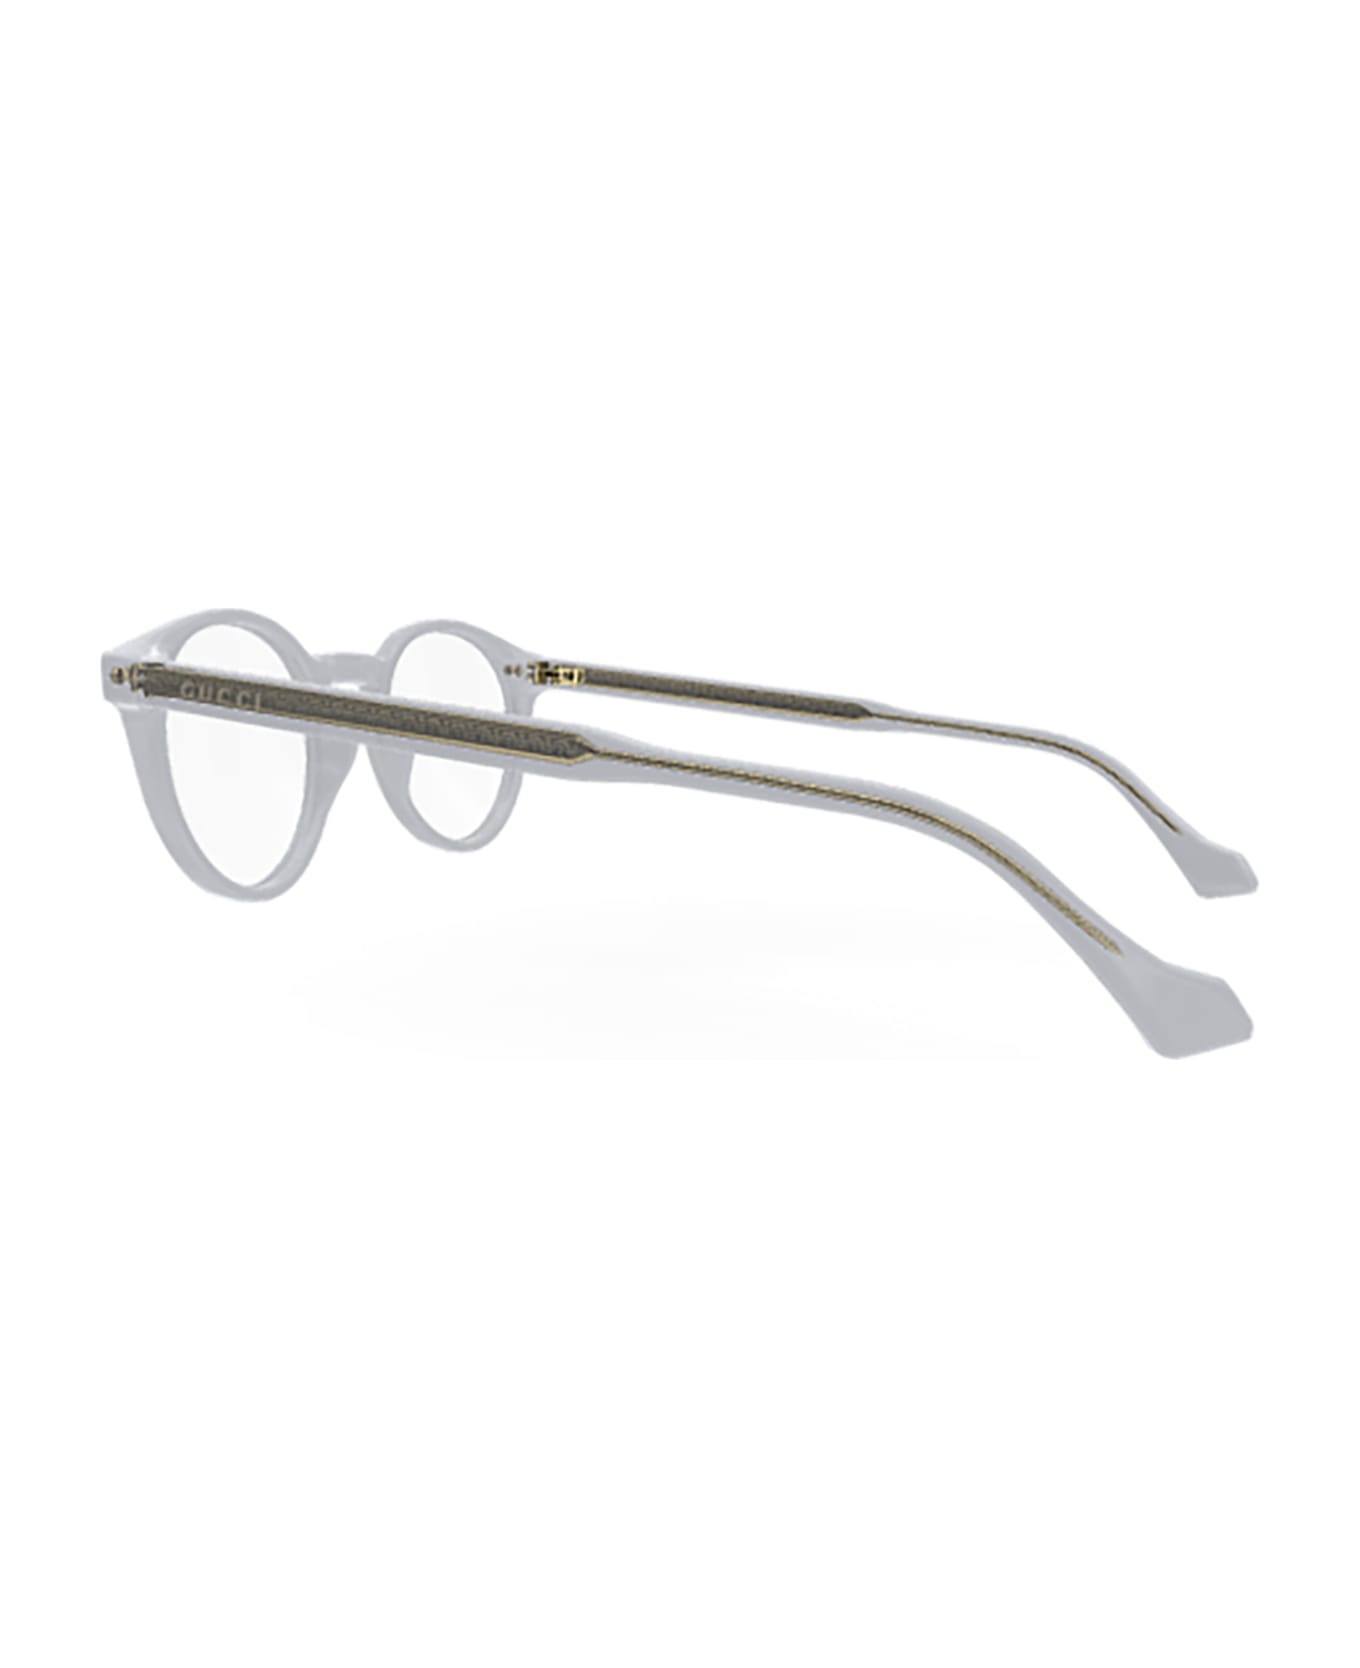 Gucci Eyewear GG0738O Eyewear - Grey Grey Transparent